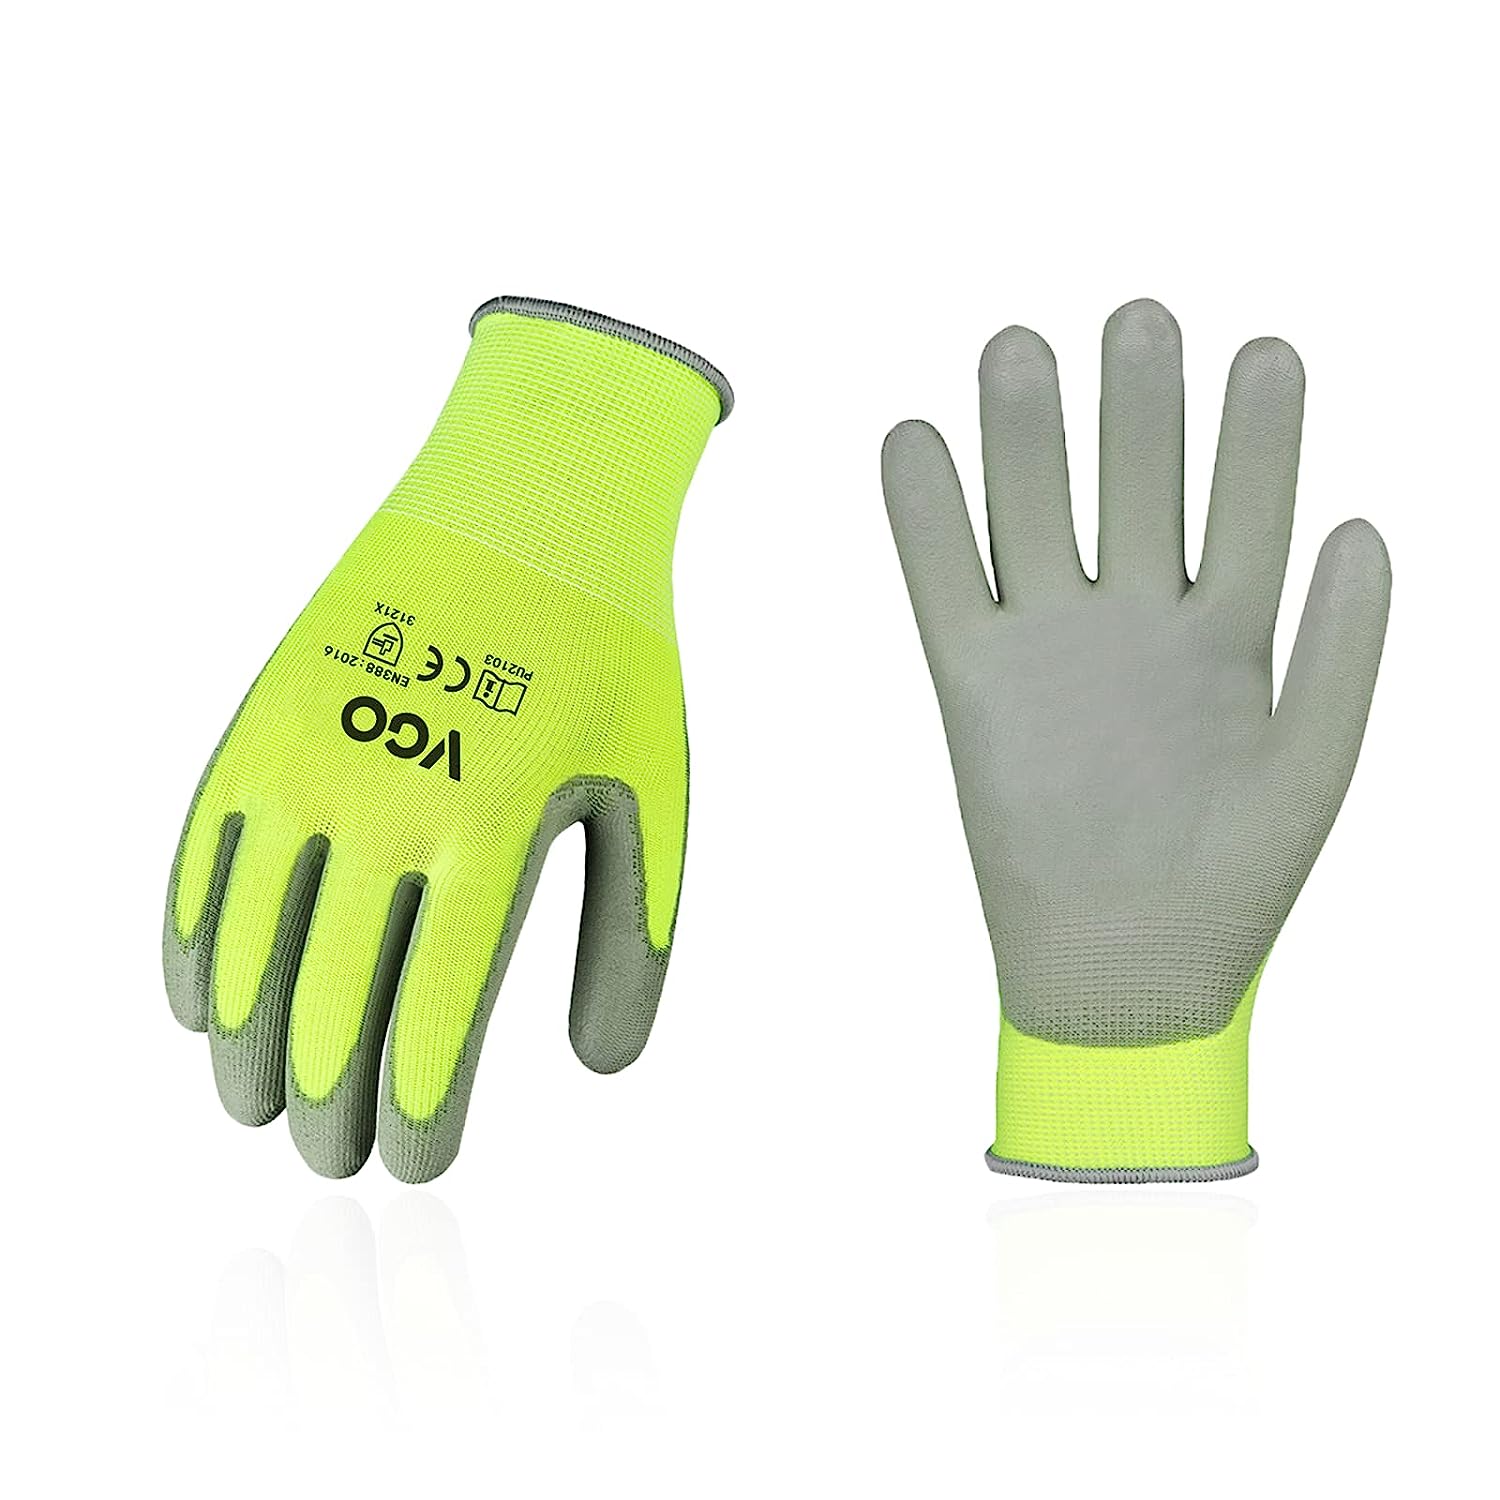 Vgo... 15-Pairs Safety Work Gloves, Gardening Gloves, [...]